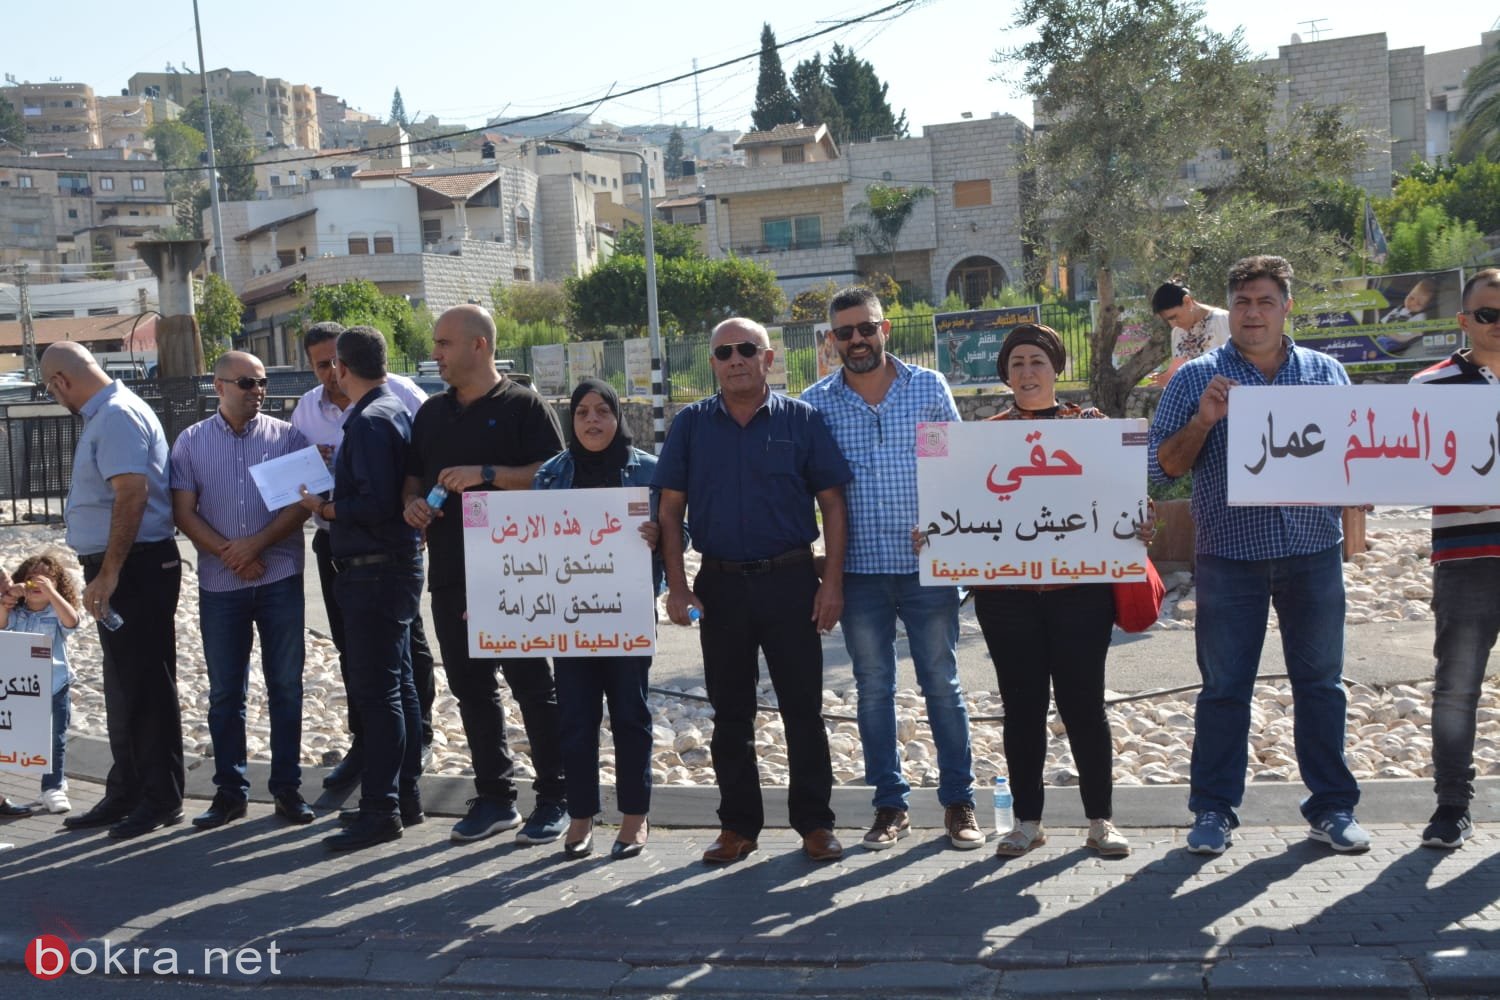 الرينة: موظفو وأعضاء المجلس يتظاهرون احتجاجًا على الاعتداء على زميلهم-5